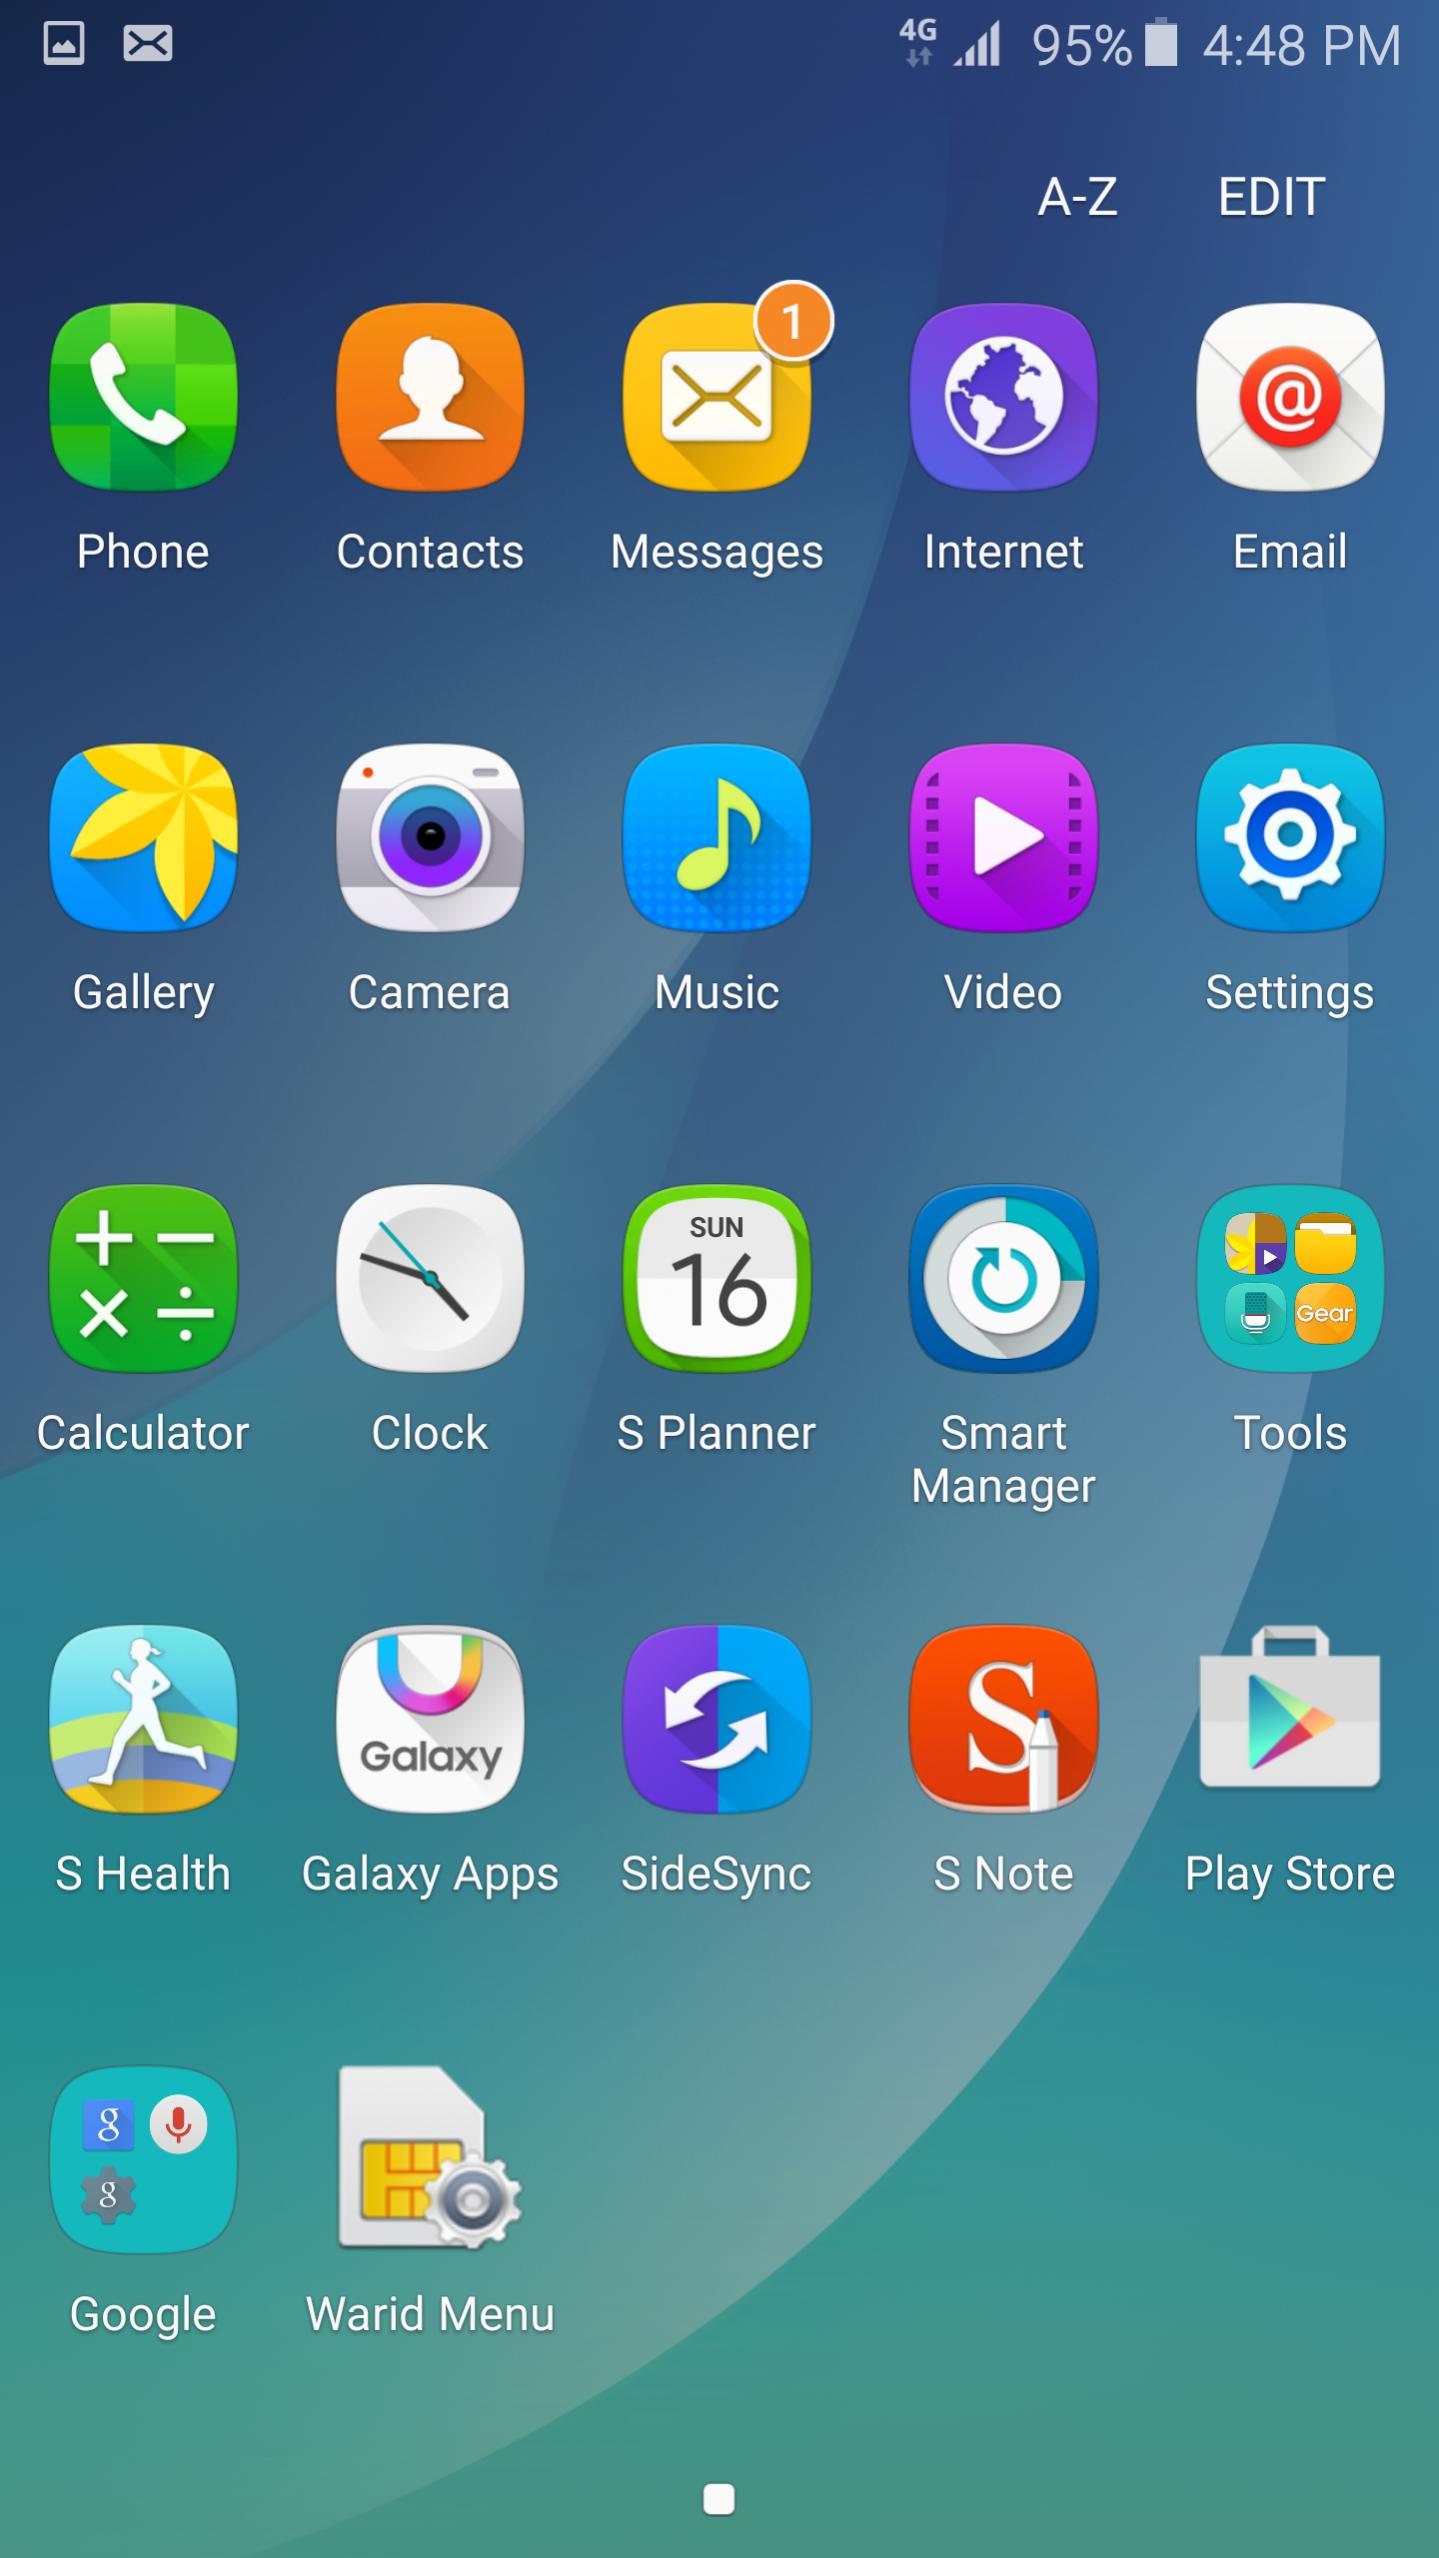 چگونه محیط کاربری Galaxy S6 خود را شبیه به Galaxy Note 5 کنیم؟ - تکفارس 